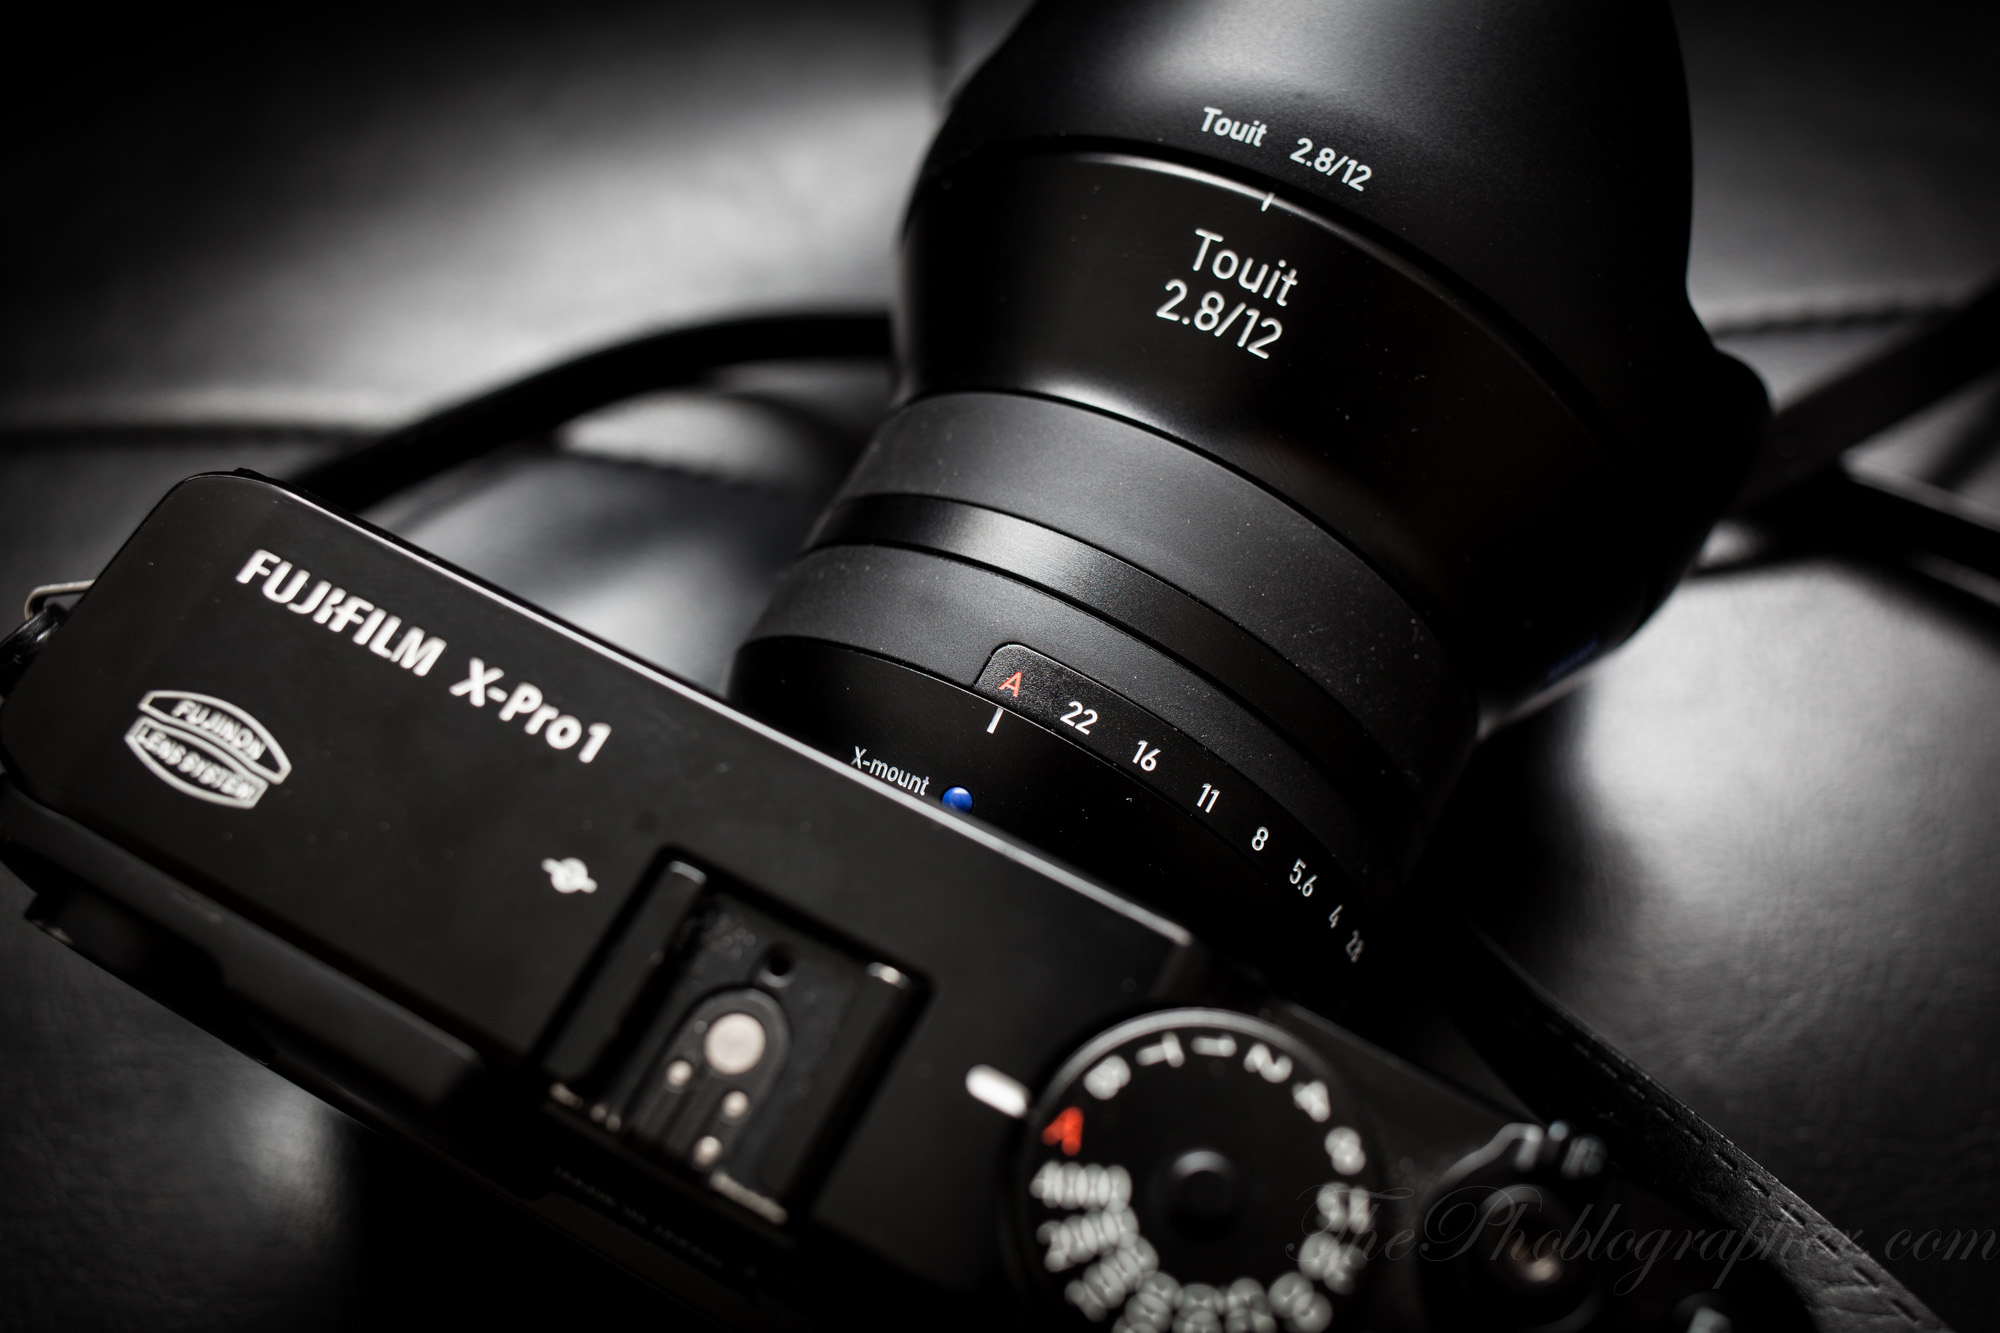 Verplicht soort registreren Review: Zeiss Touit 12mm f2.8 (Fujifilm X Mount) - The Phoblographer